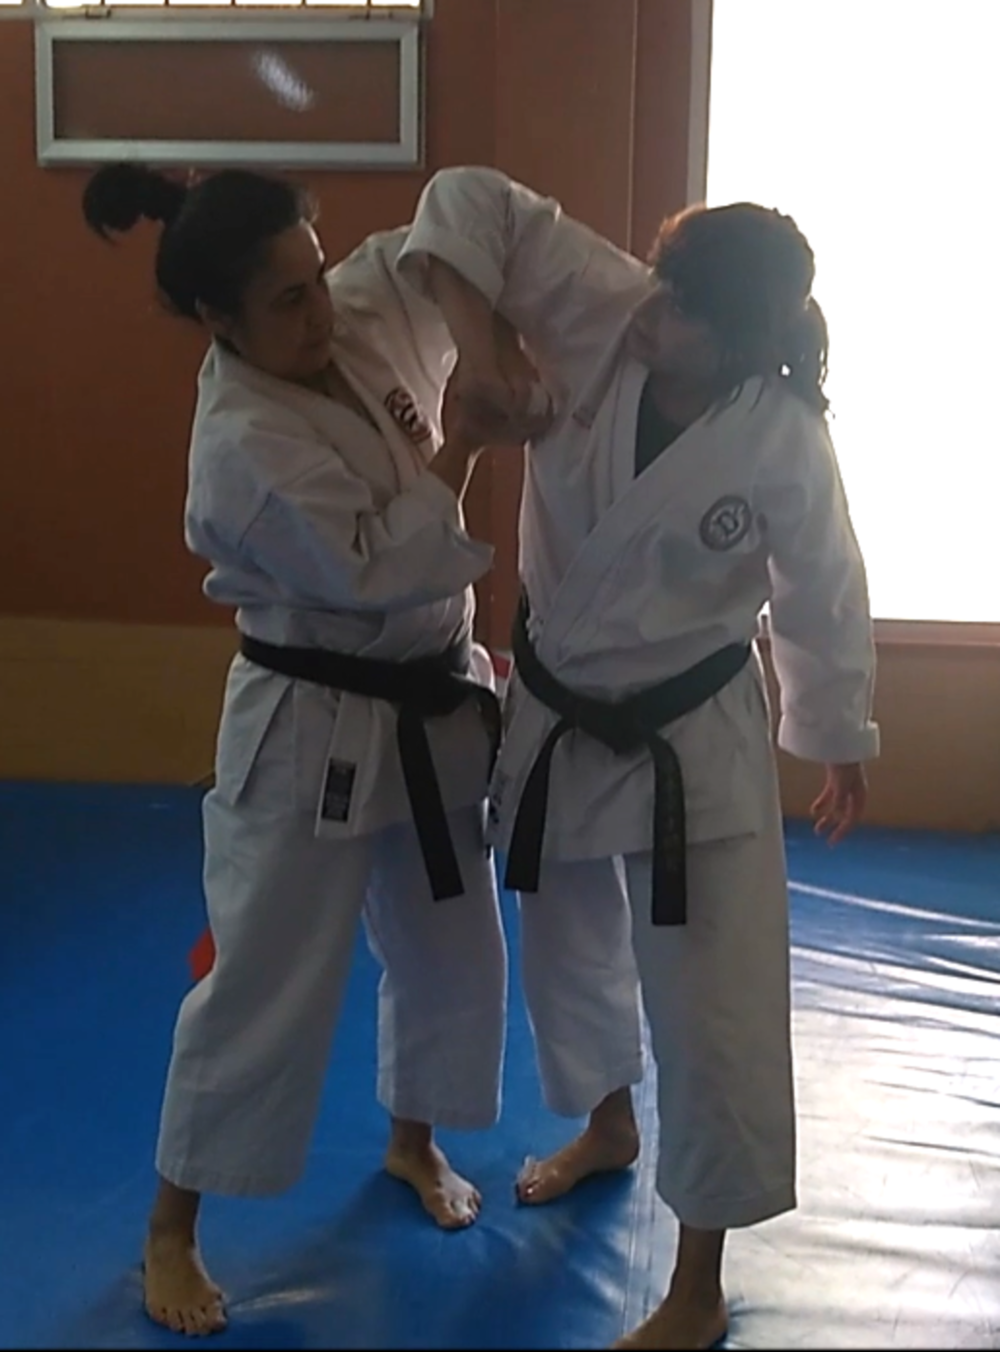 Éxito del curso de defensa personal del Shotokan